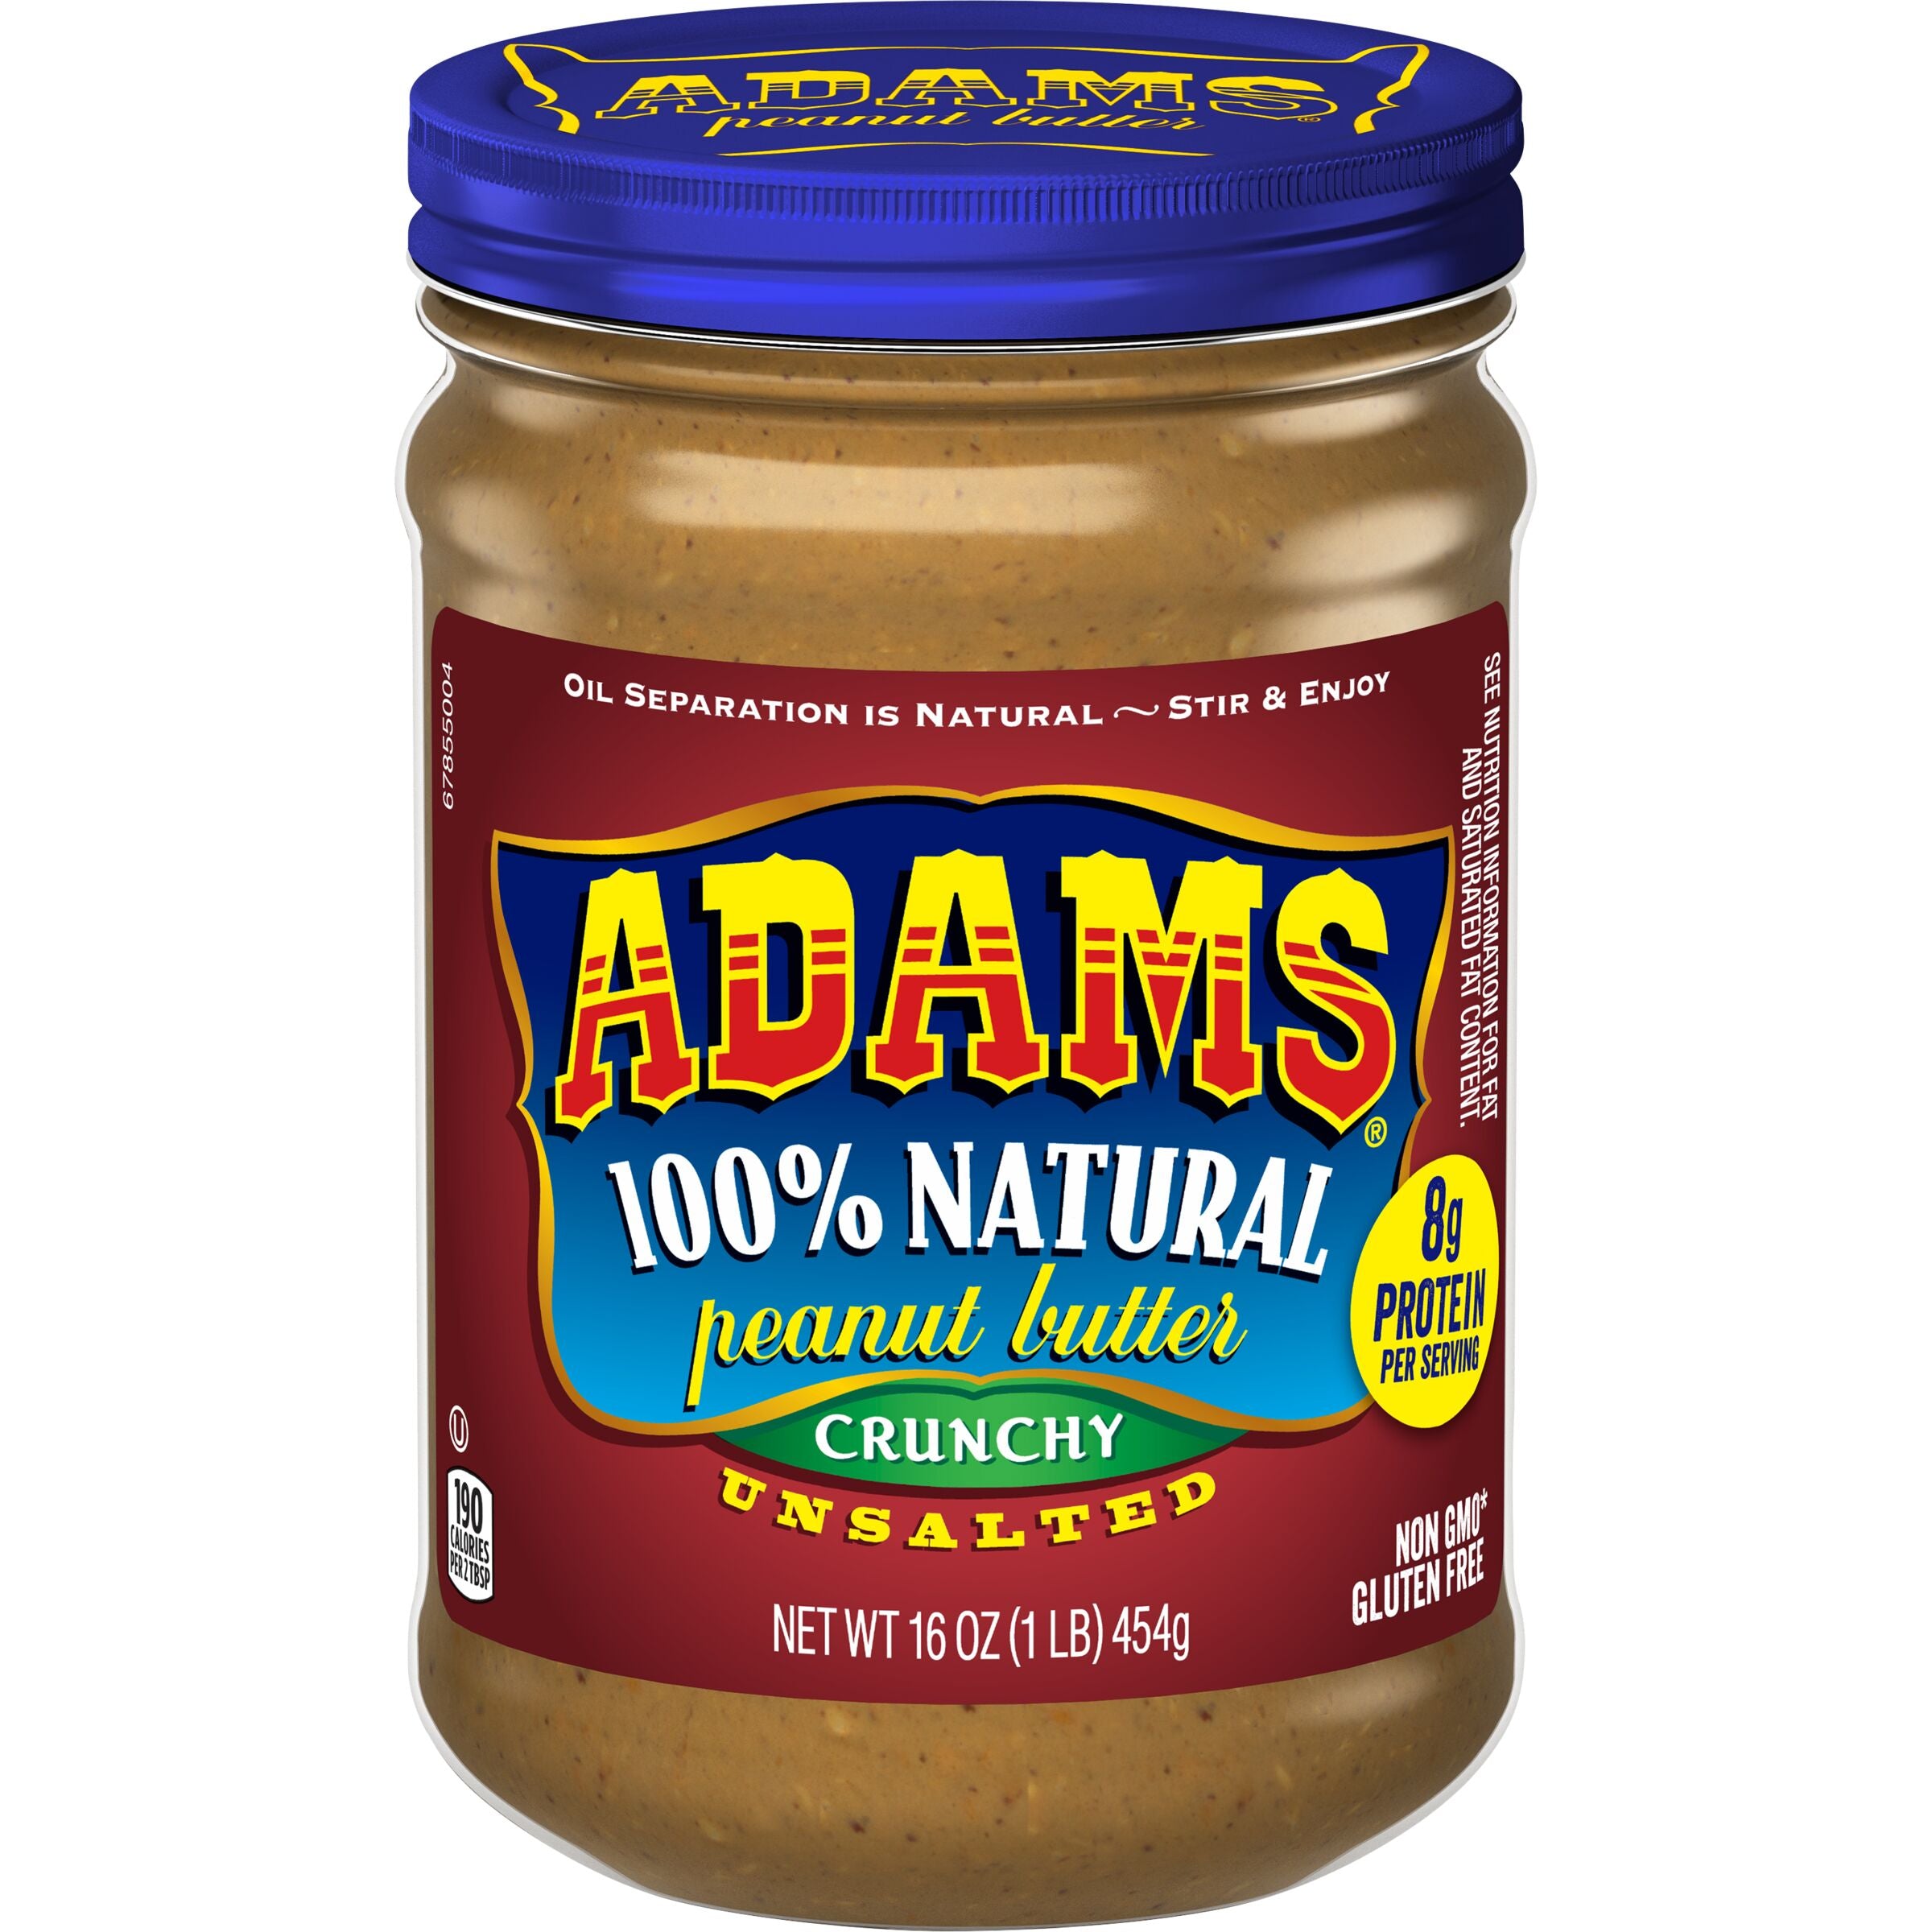 Adams Natural Unsalted Crunchy Peanut Butter, 16 oz